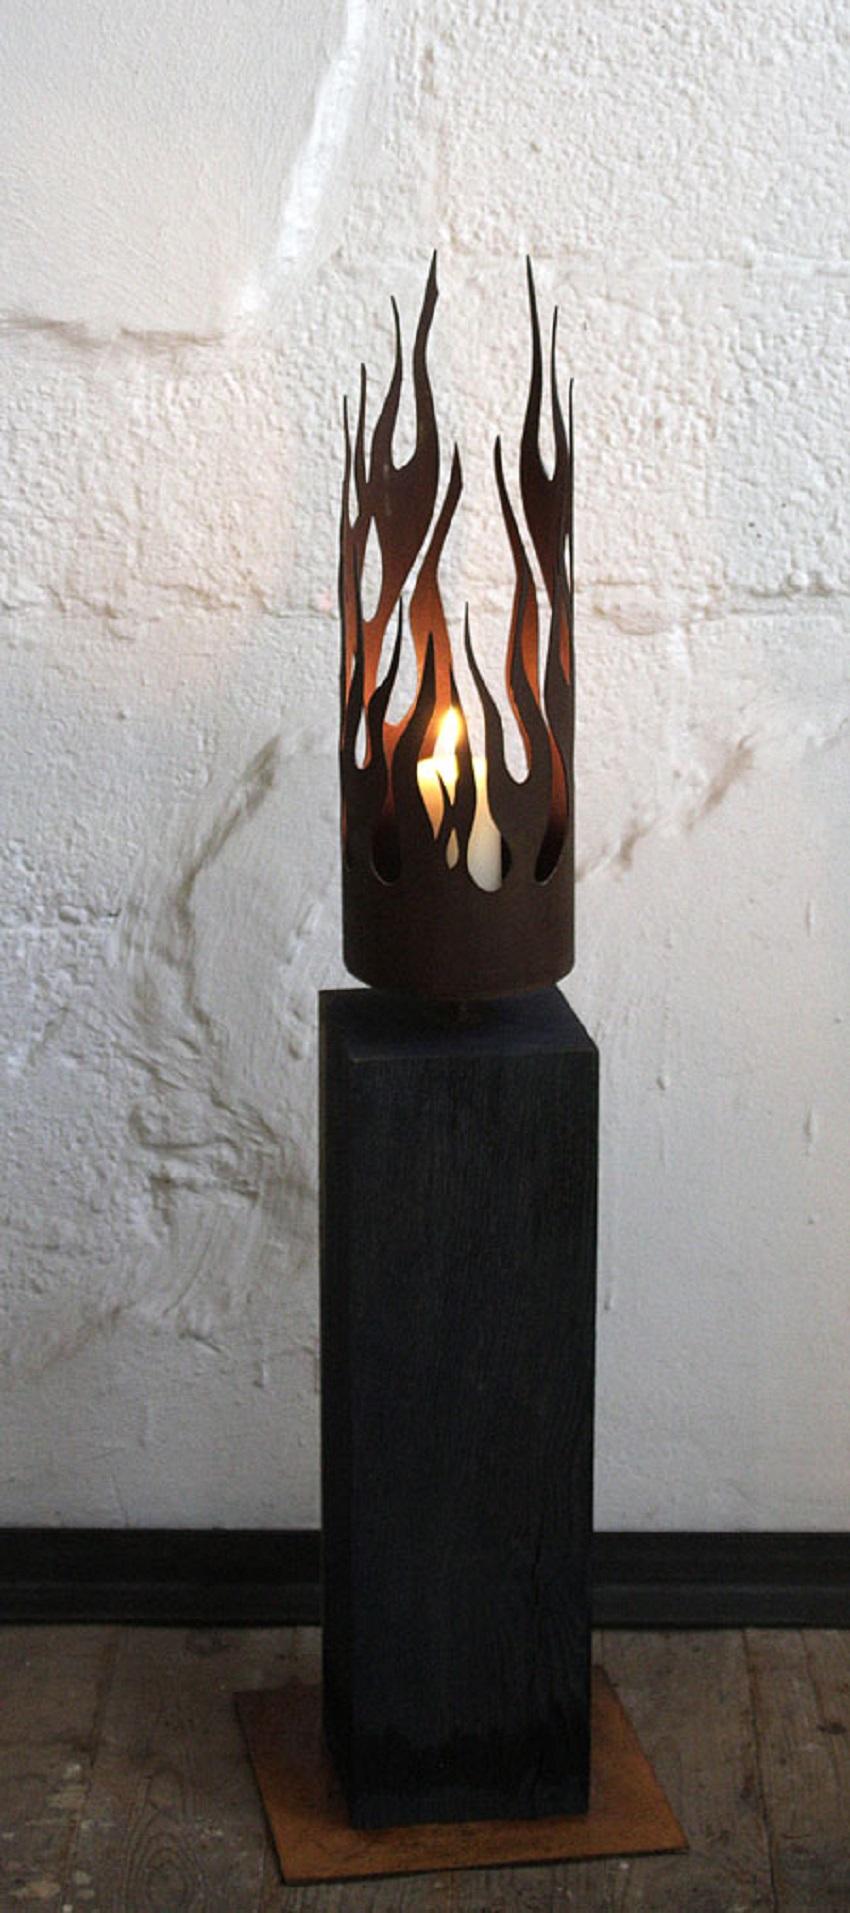 Einzigartiger Kerzenständer - "Flames" auf einem Sockel aus oxidierter Eiche - Mittlere Höhe – Mixed Media Art von Stefan Traloc